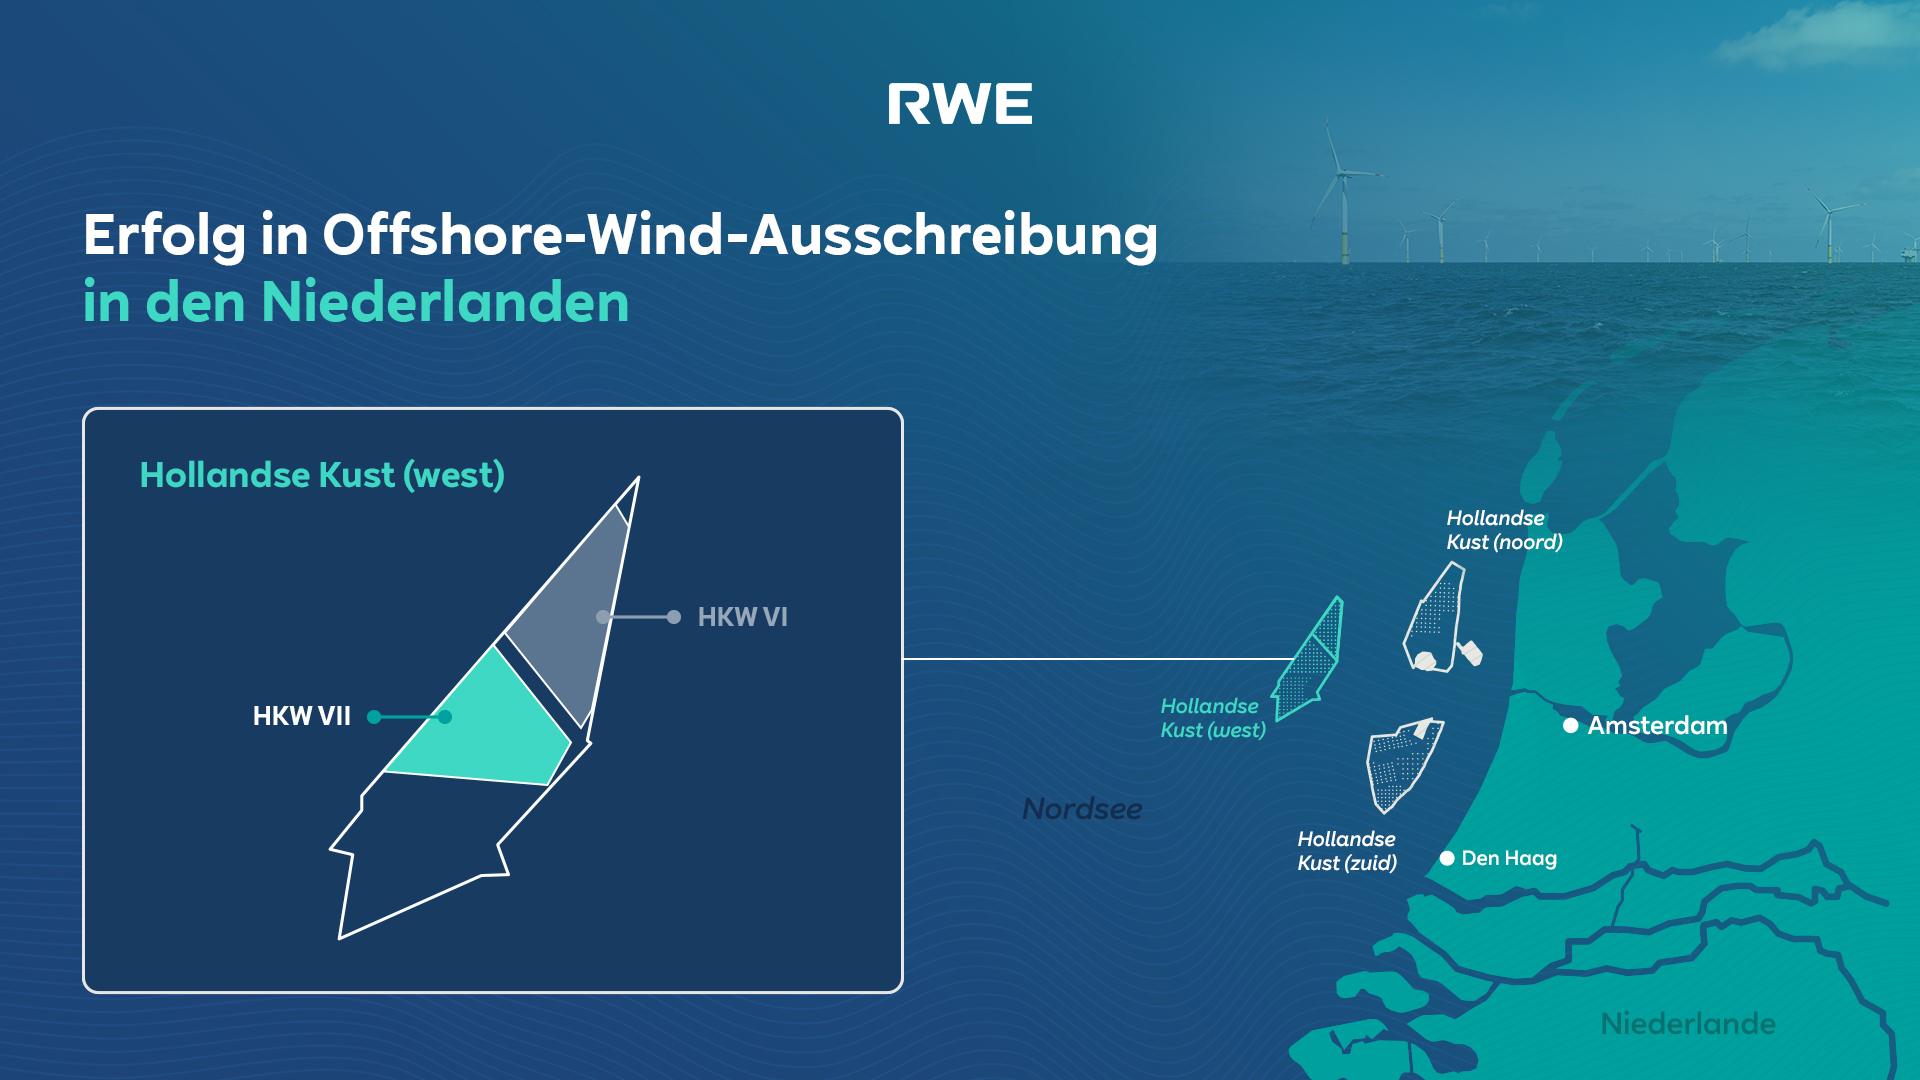 Hollandse Kust West VII: RWE erfolgreich in niederländischer Offshore-Wind-Ausschreibung